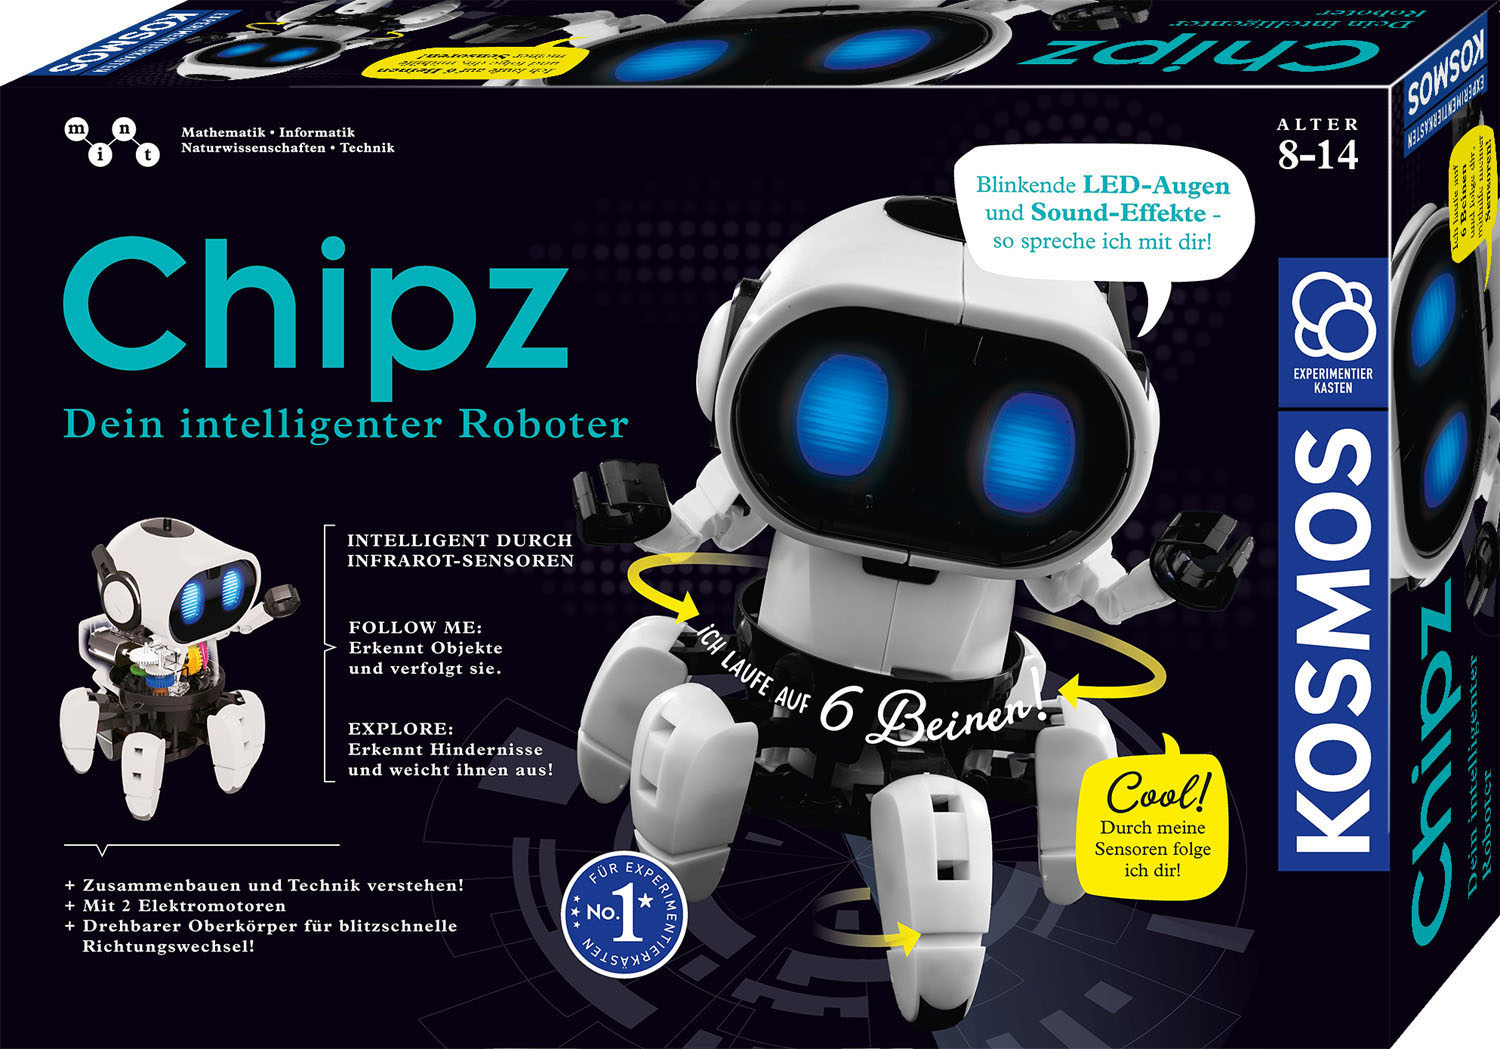 KOSMOS Chipz - Experimentierkasten, Roboter Mehrfarbig intelligenter Dein